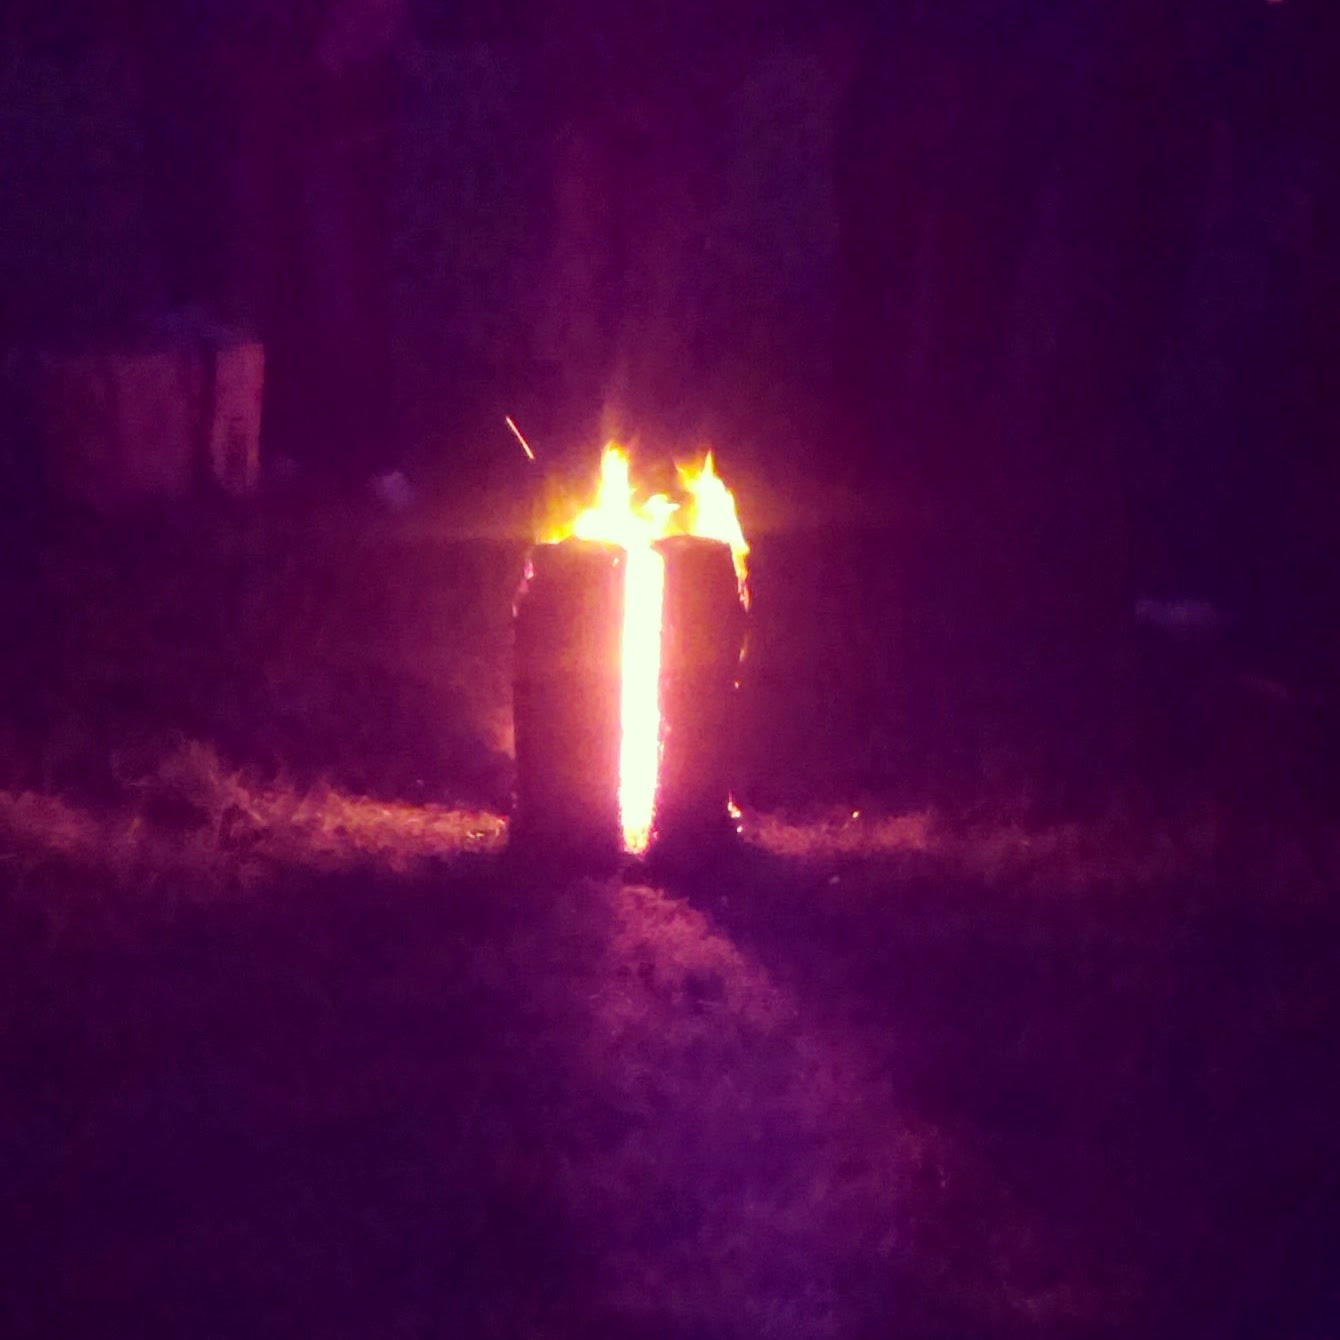 9pm - fire in a log